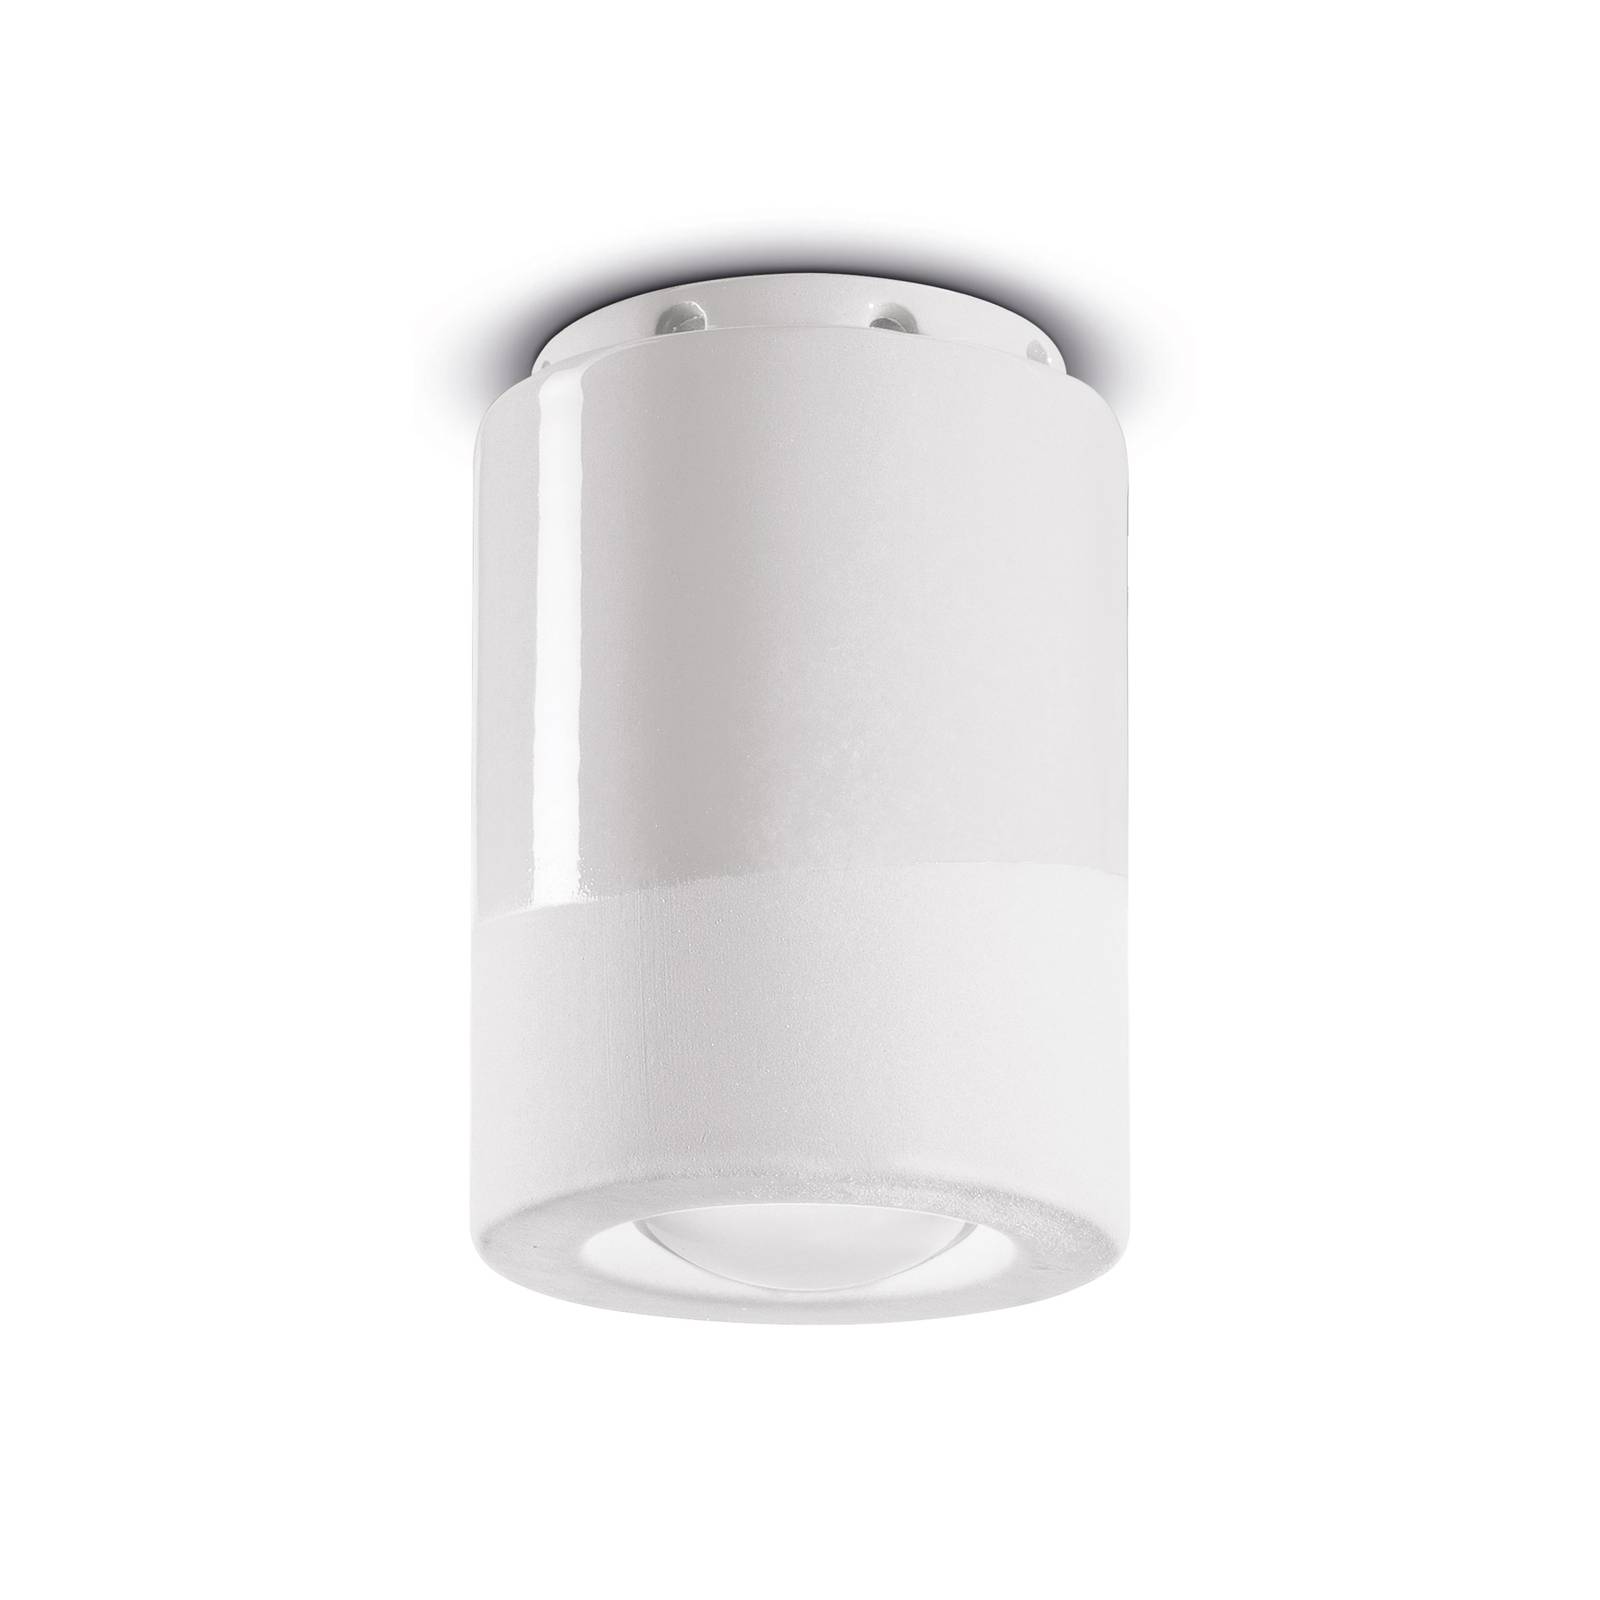 PI loftslampe cylindrisk Ø 8,5 cm hvid